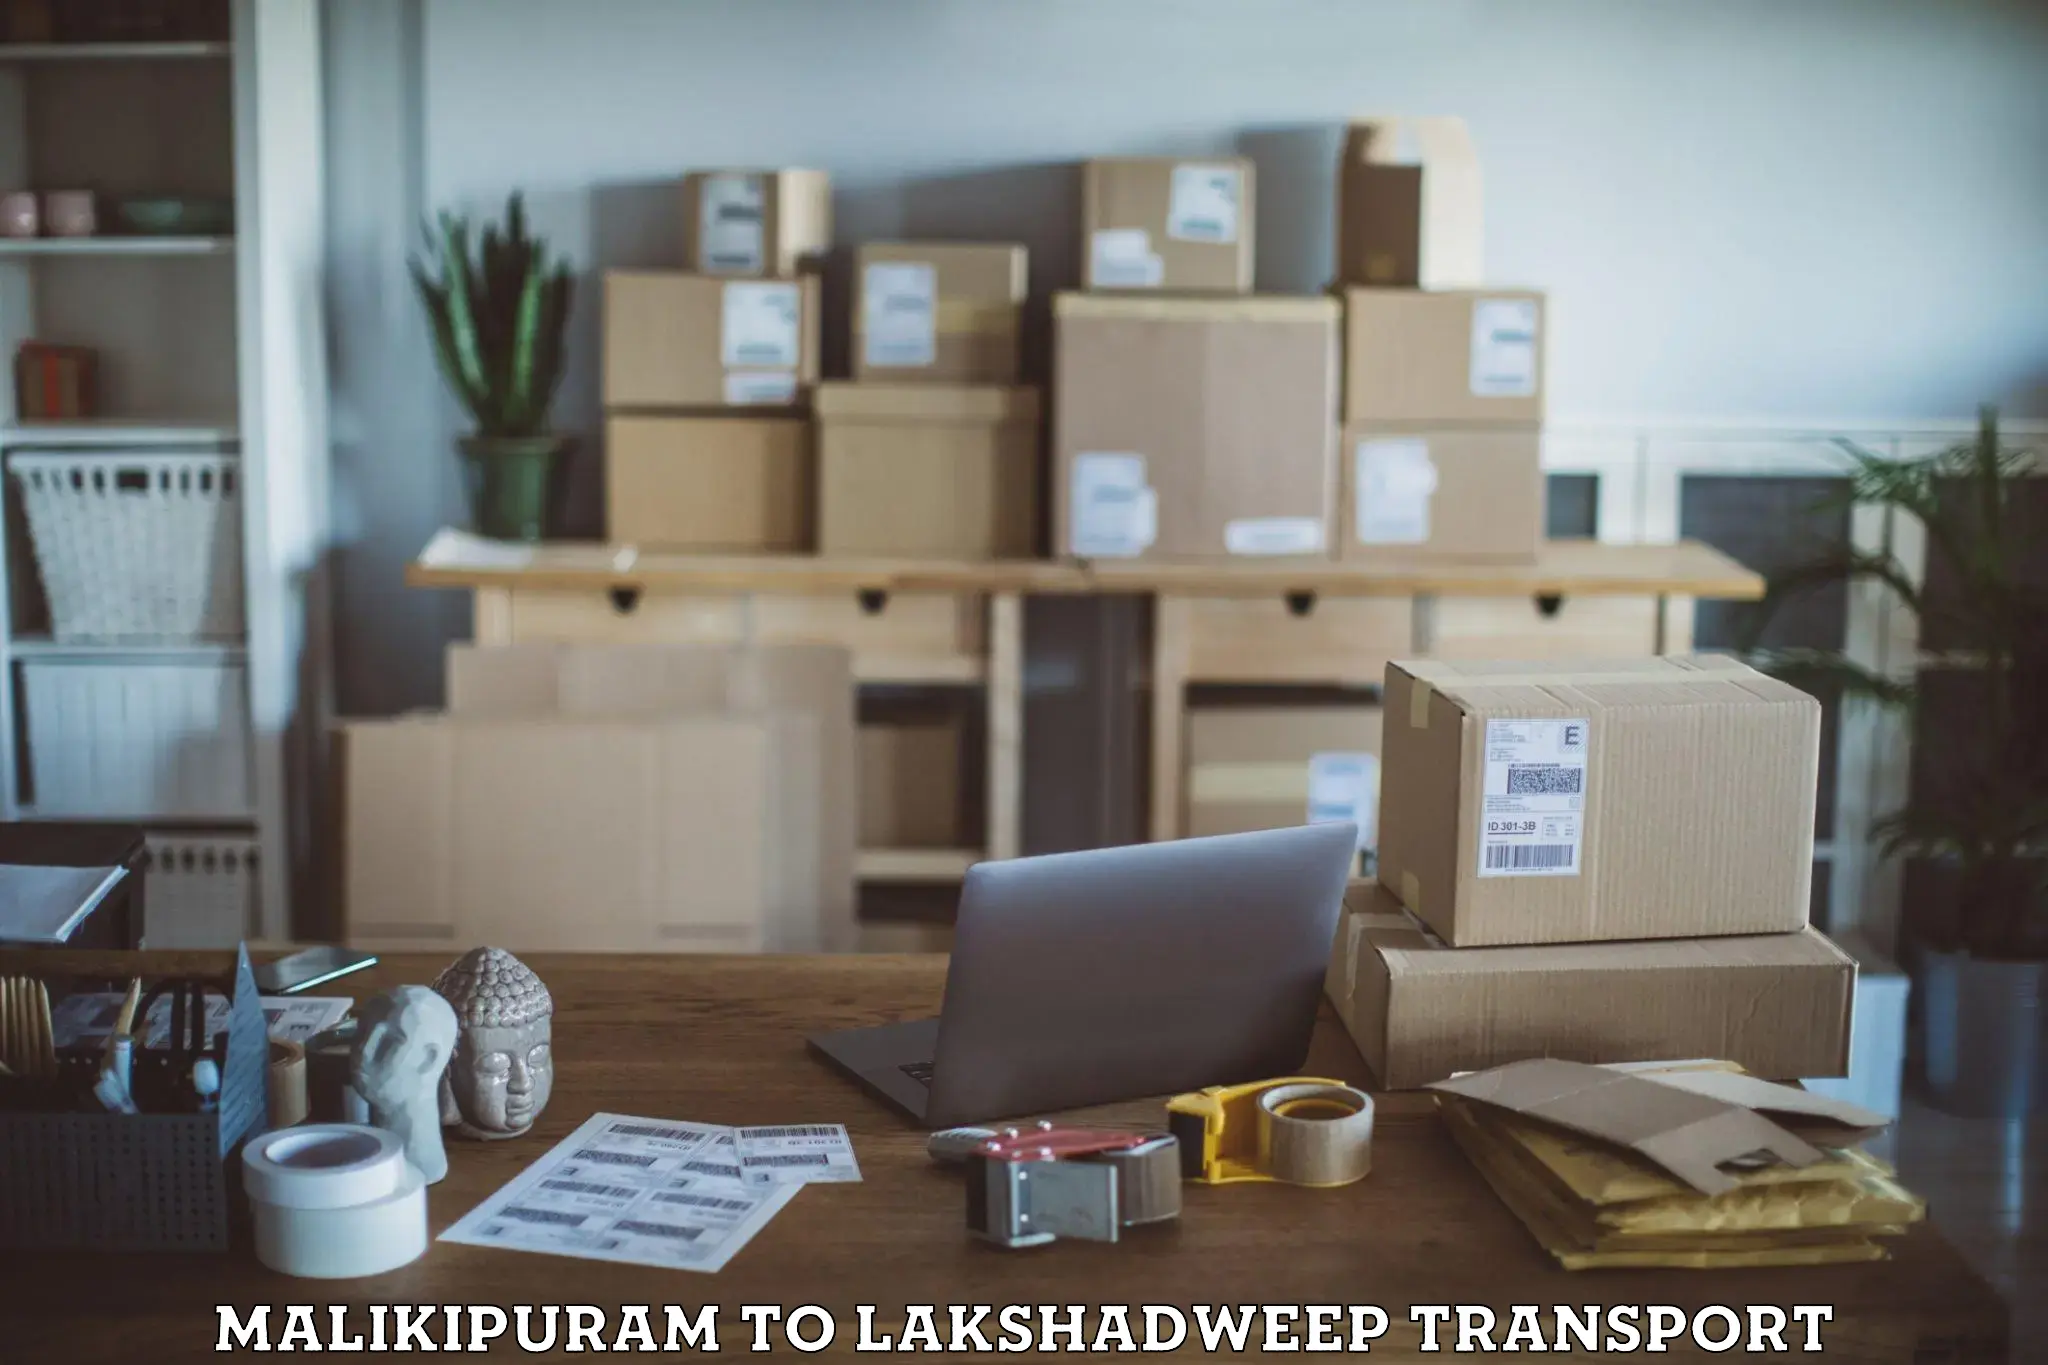 Vehicle parcel service Malikipuram to Lakshadweep